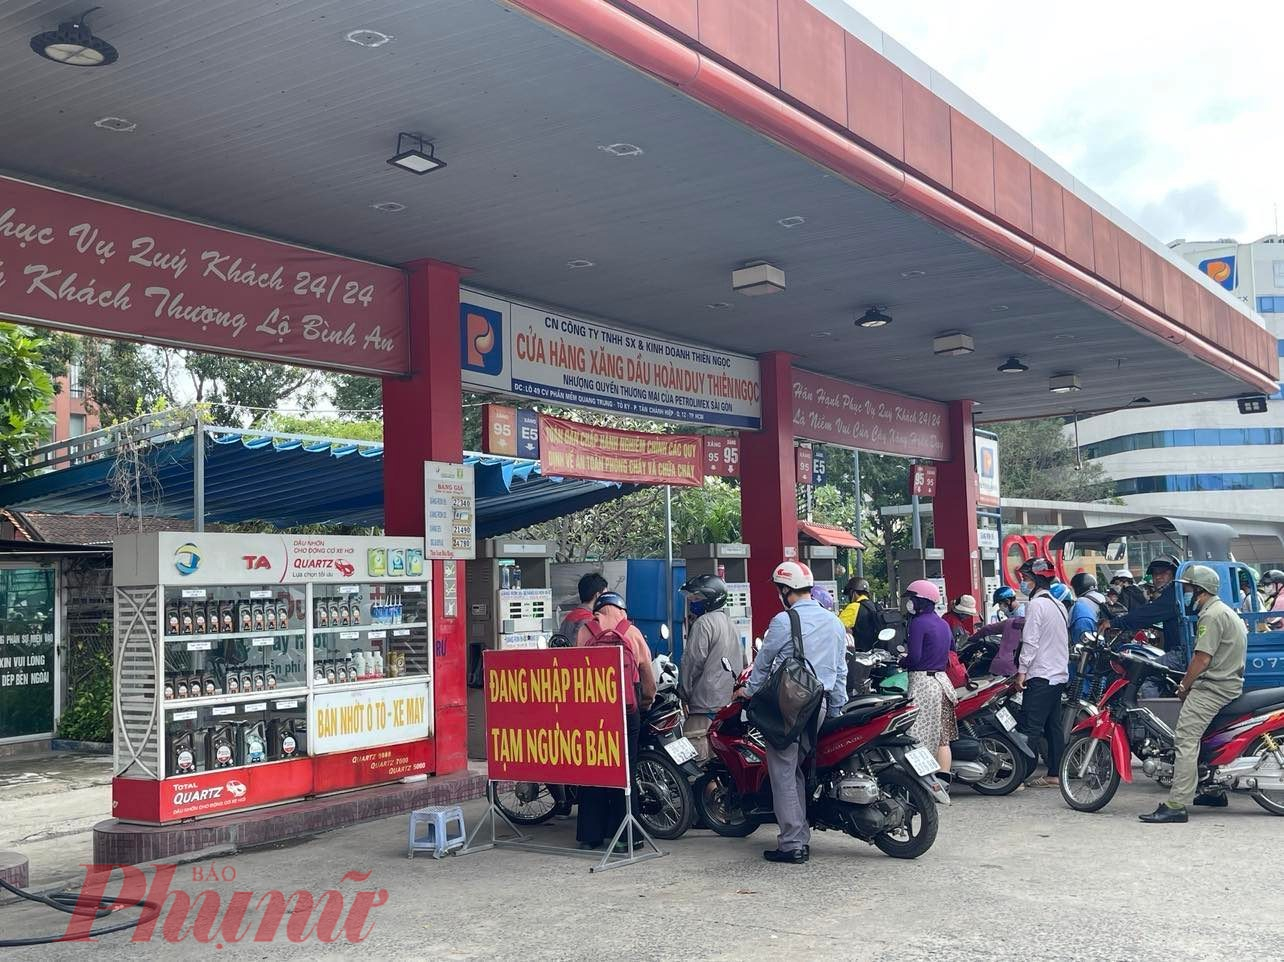 Người dân vẫn còn gặp khó khăn khi cần đổ xăng, bên cạnh nhiều cửa hàng xăng đóng cửa thì một số cây xăng giới hạn số lượng xăng bán ra 30.000 đồng/lượt - Ảnh: Nguyễn Cẩm 